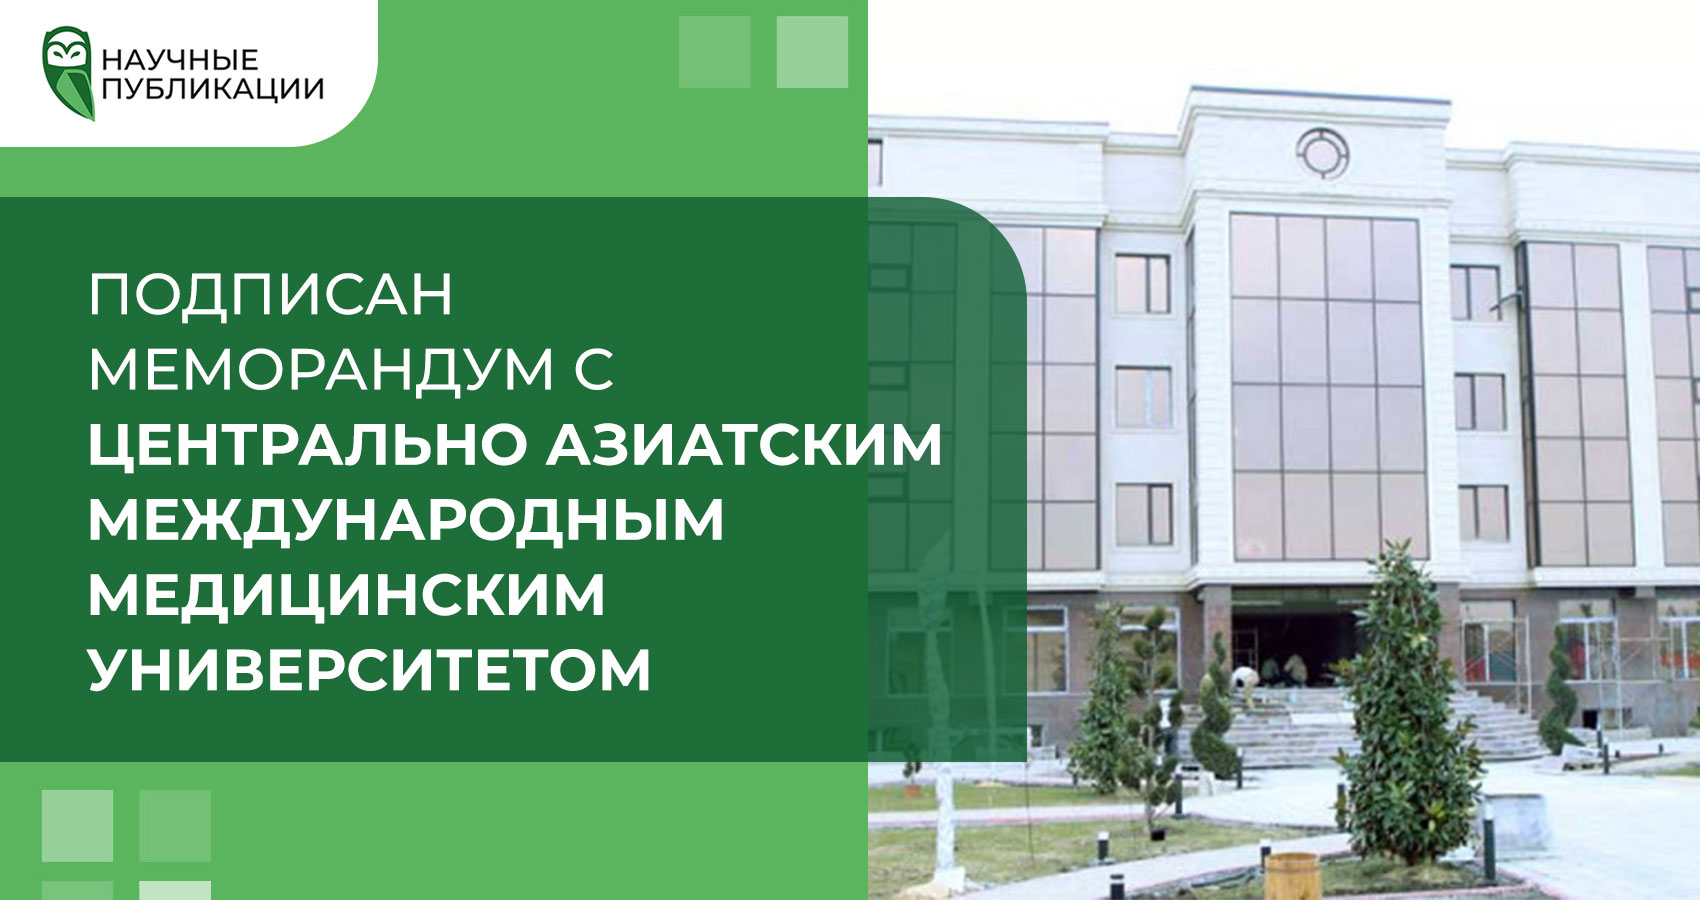 Подписан меморандум с Центрально Азиатским международным медицинским университетом